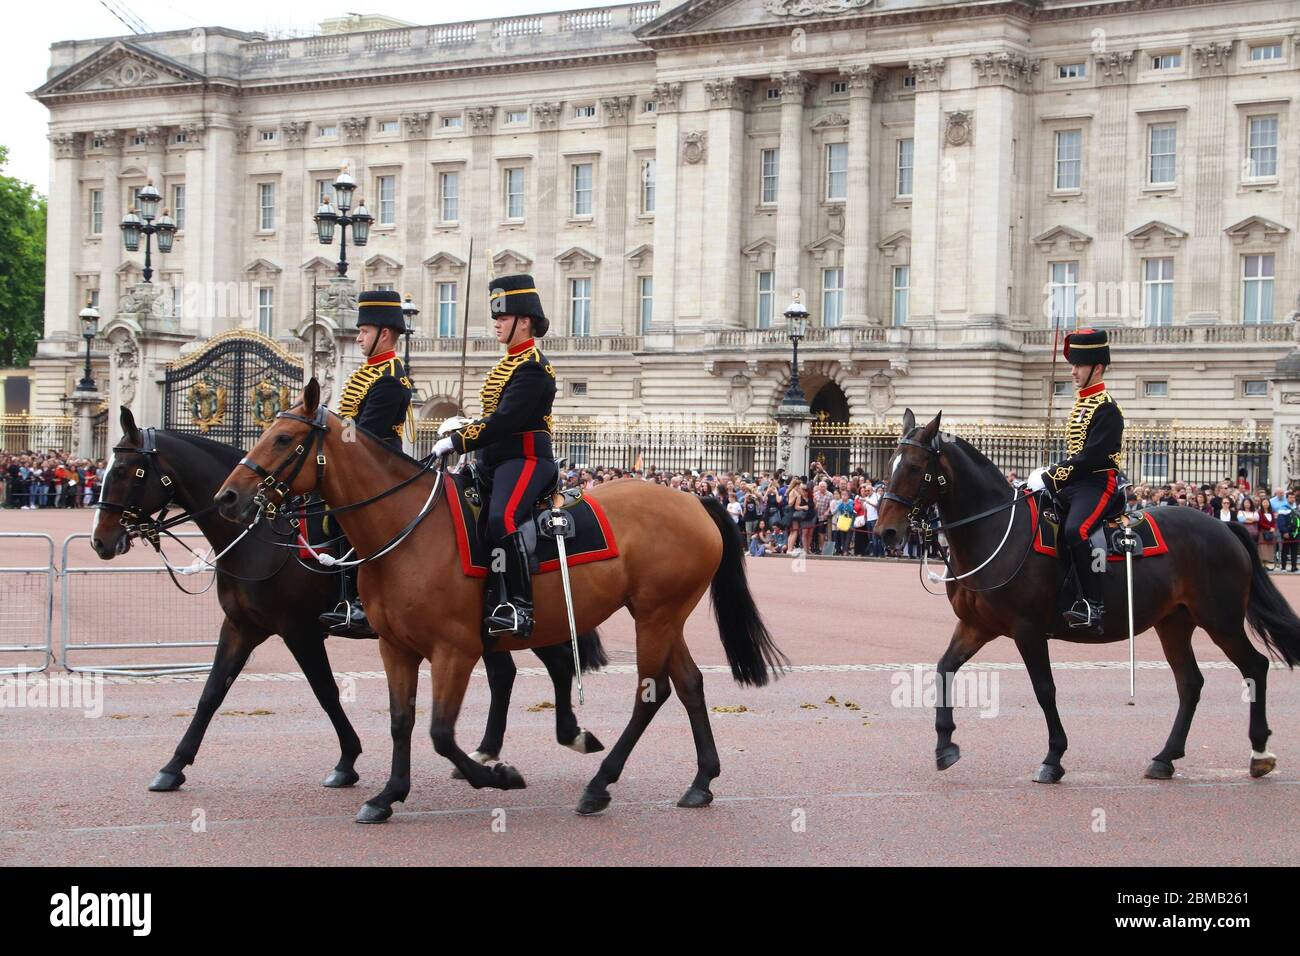 LONDON, UK - 15. JULI 2019: Horse Guards Zeremonie während der wachablösung vor dem Buckingham Palace, London. Stockfoto